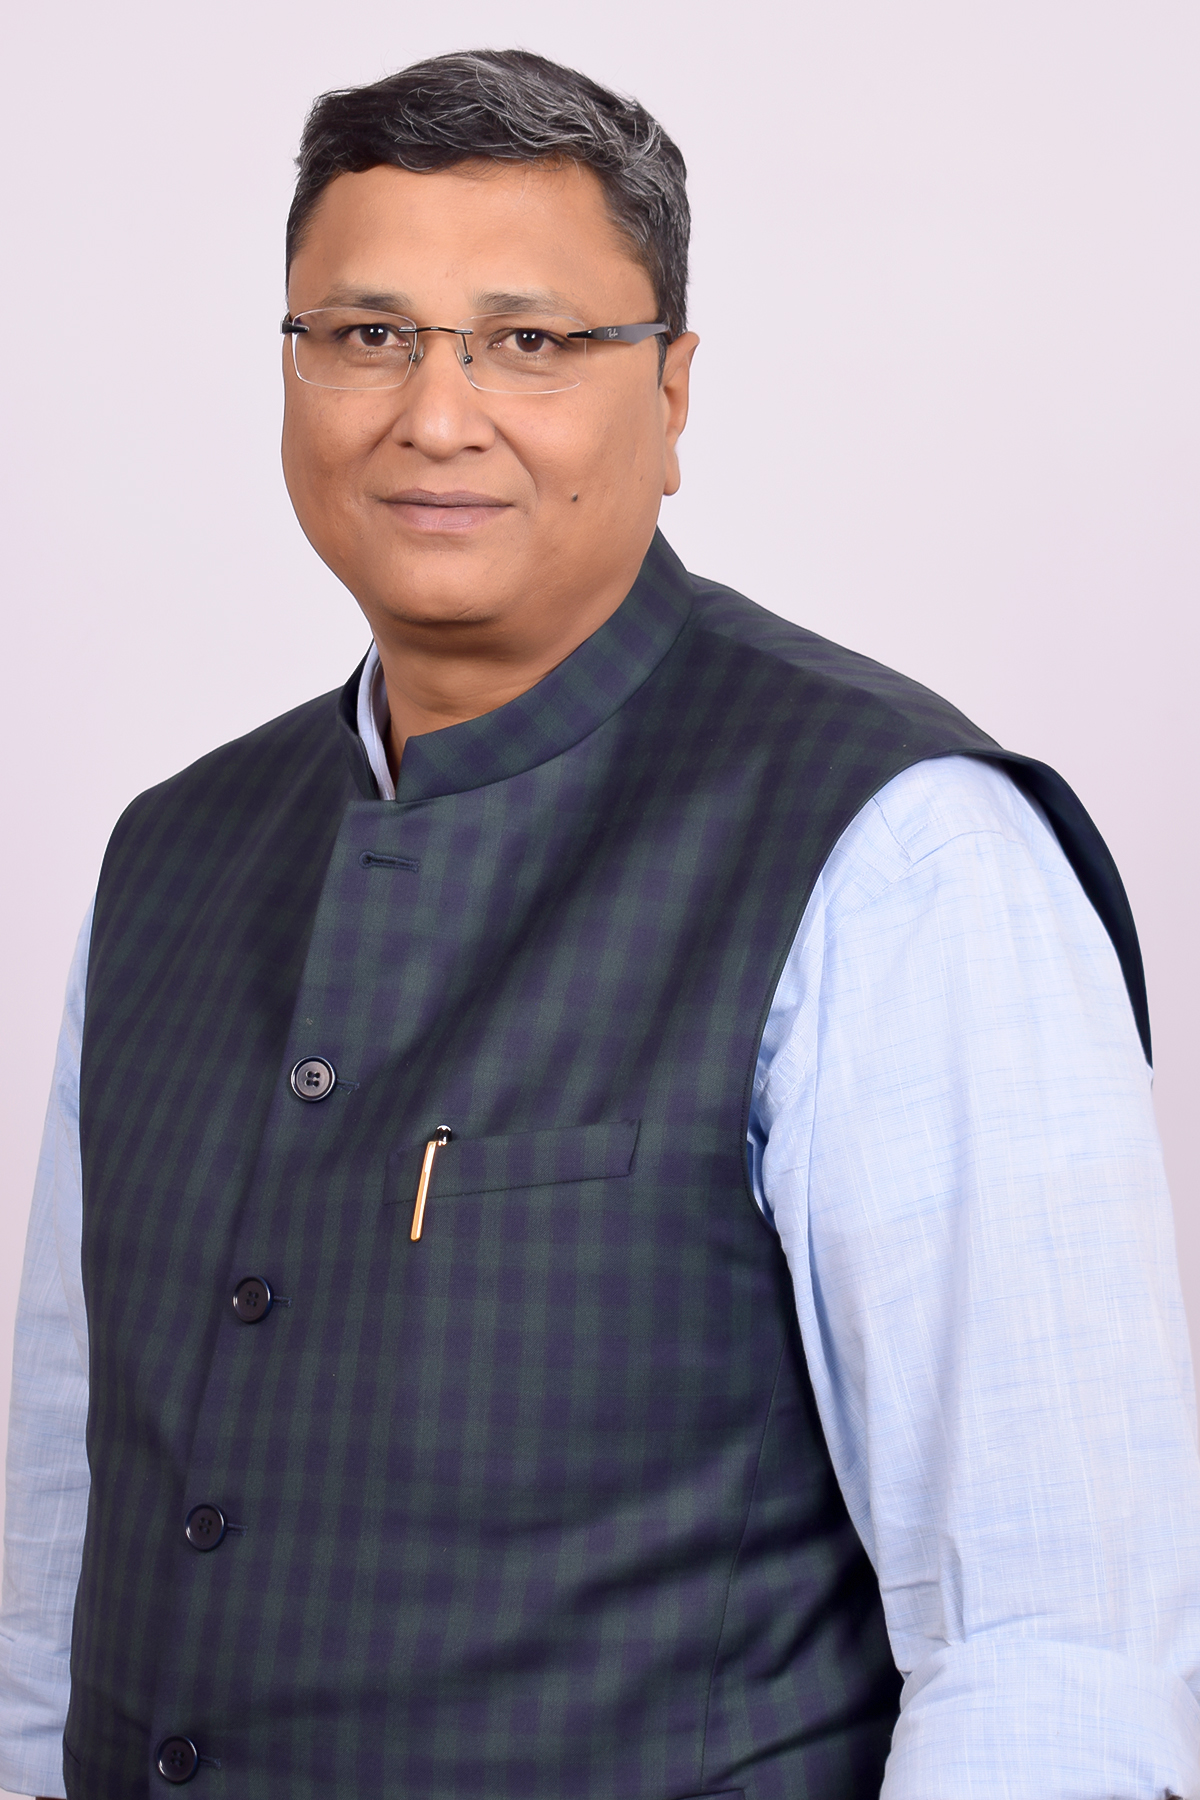 Mr. Ashish Deendayal Jain